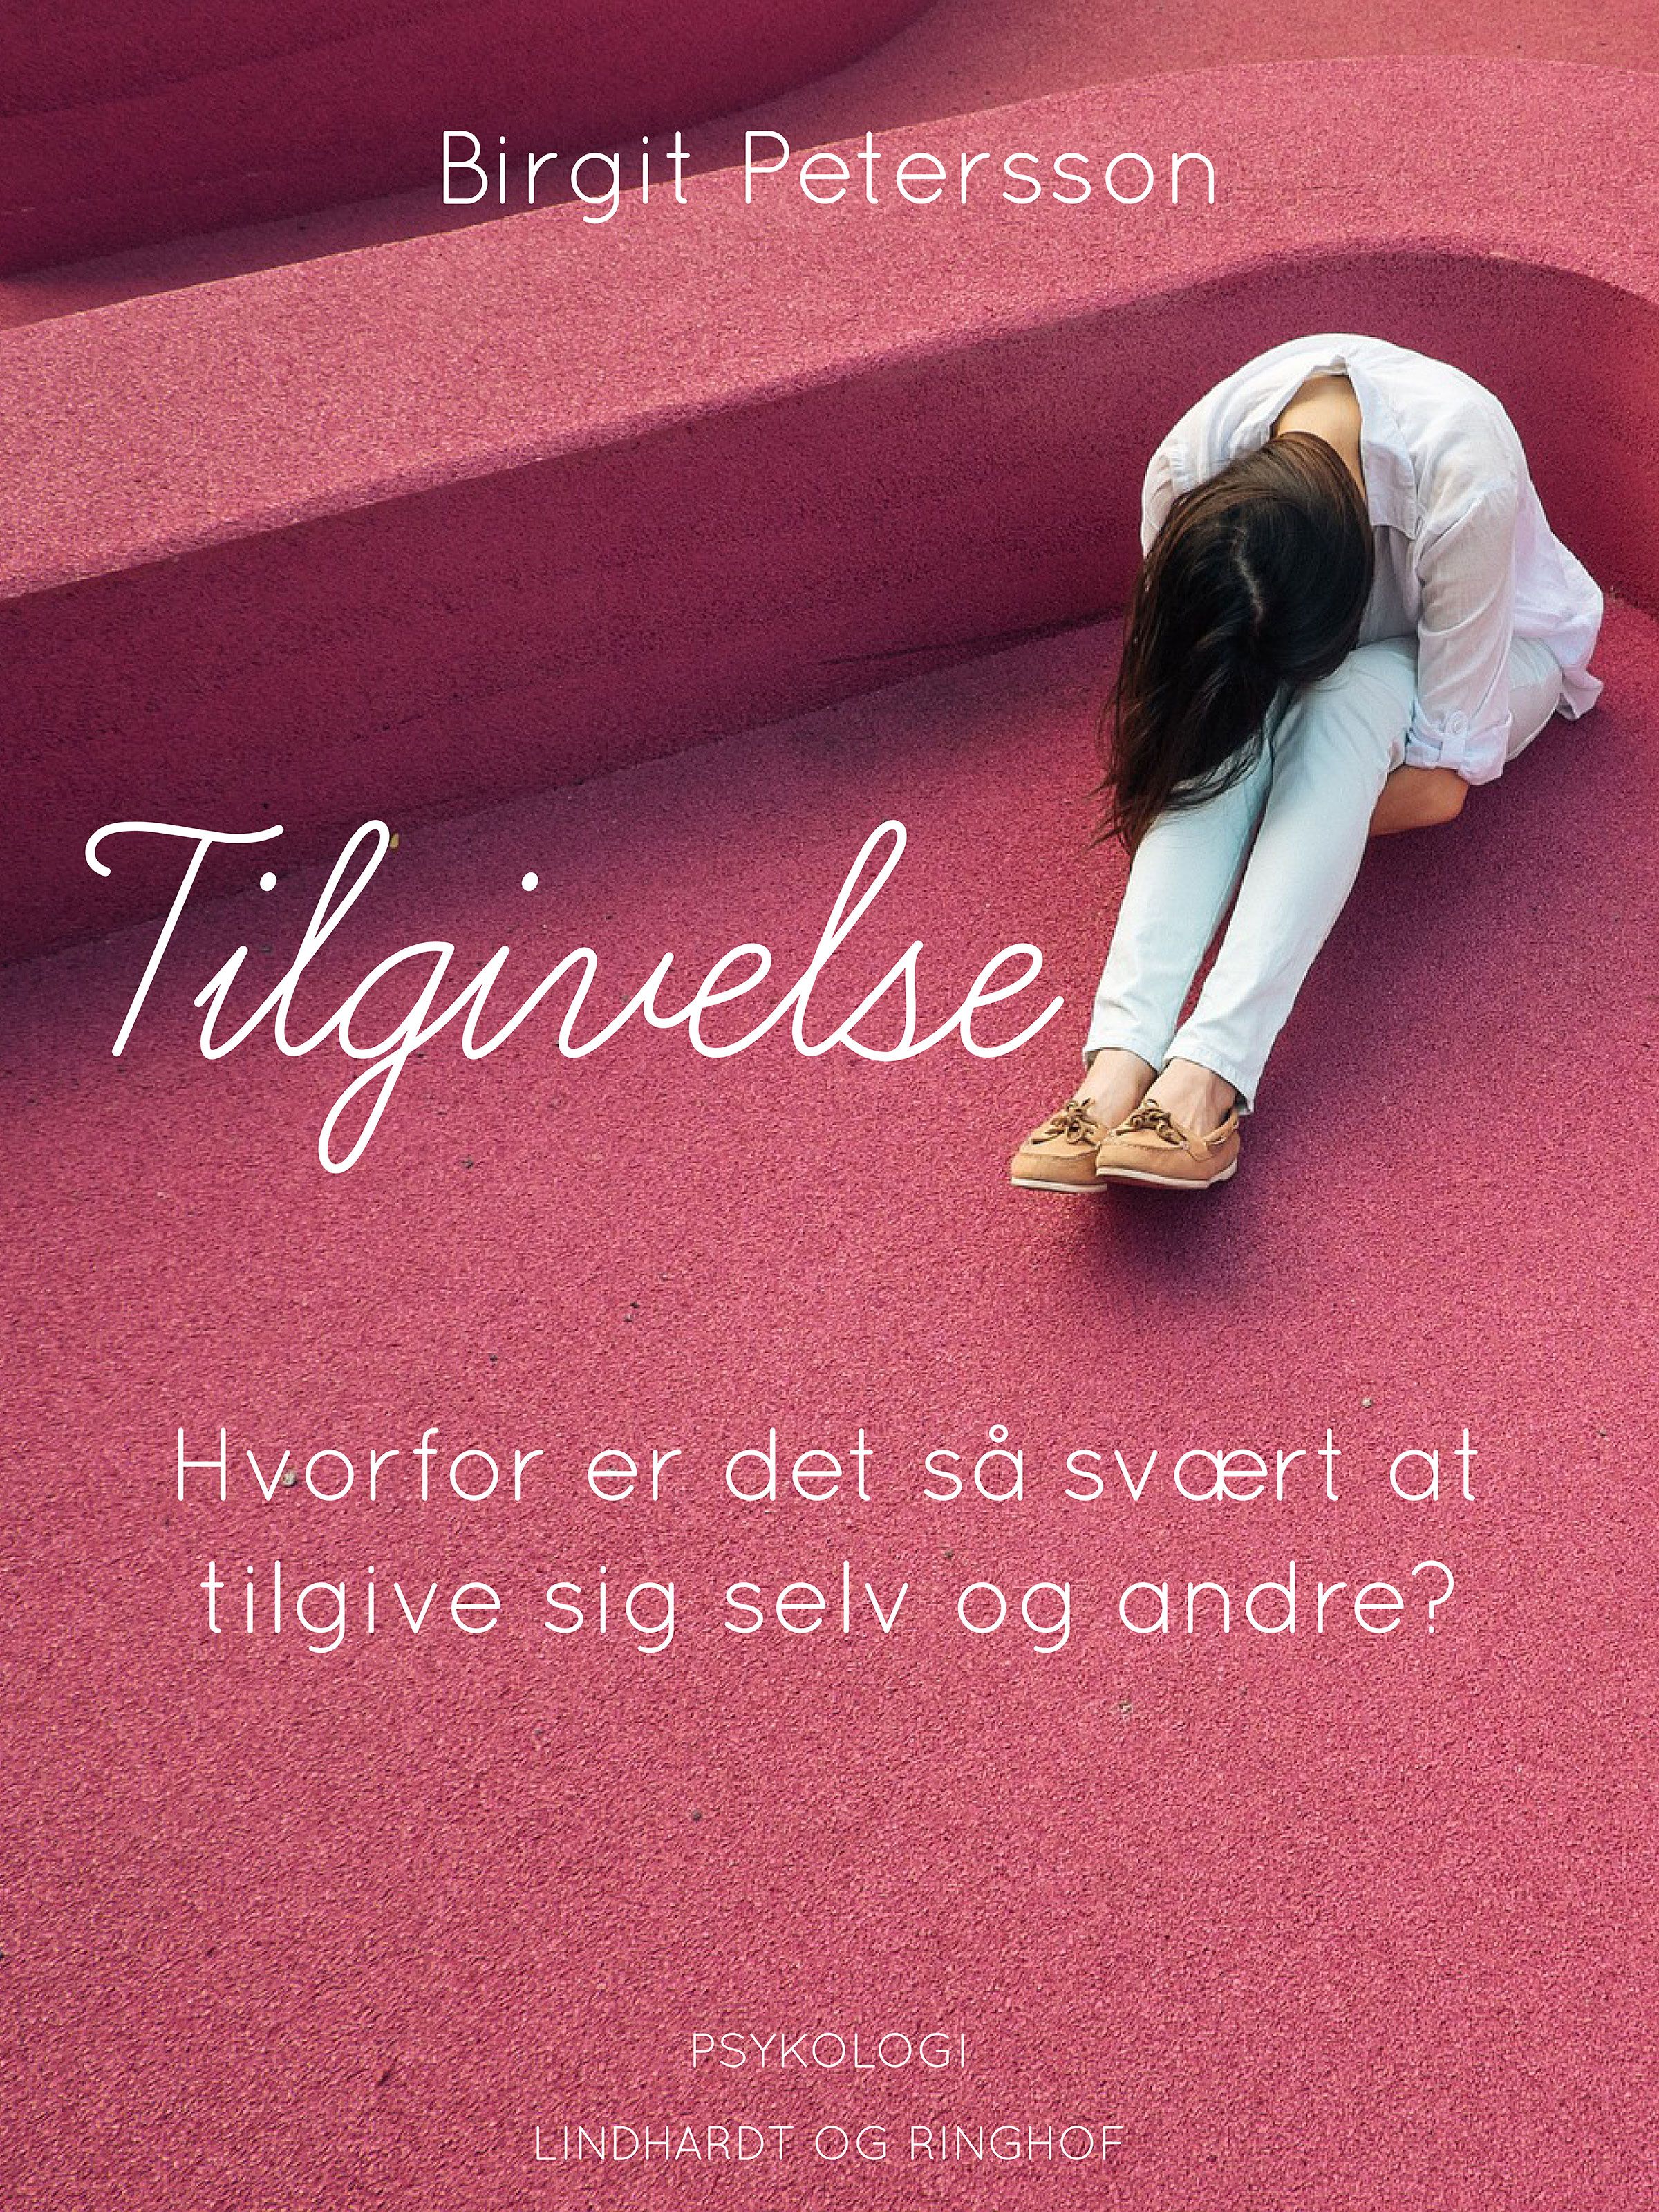 Tilgivelse. Hvorfor er det så svært at tilgive sig selv og andre, e-bok av Birgit Petersson